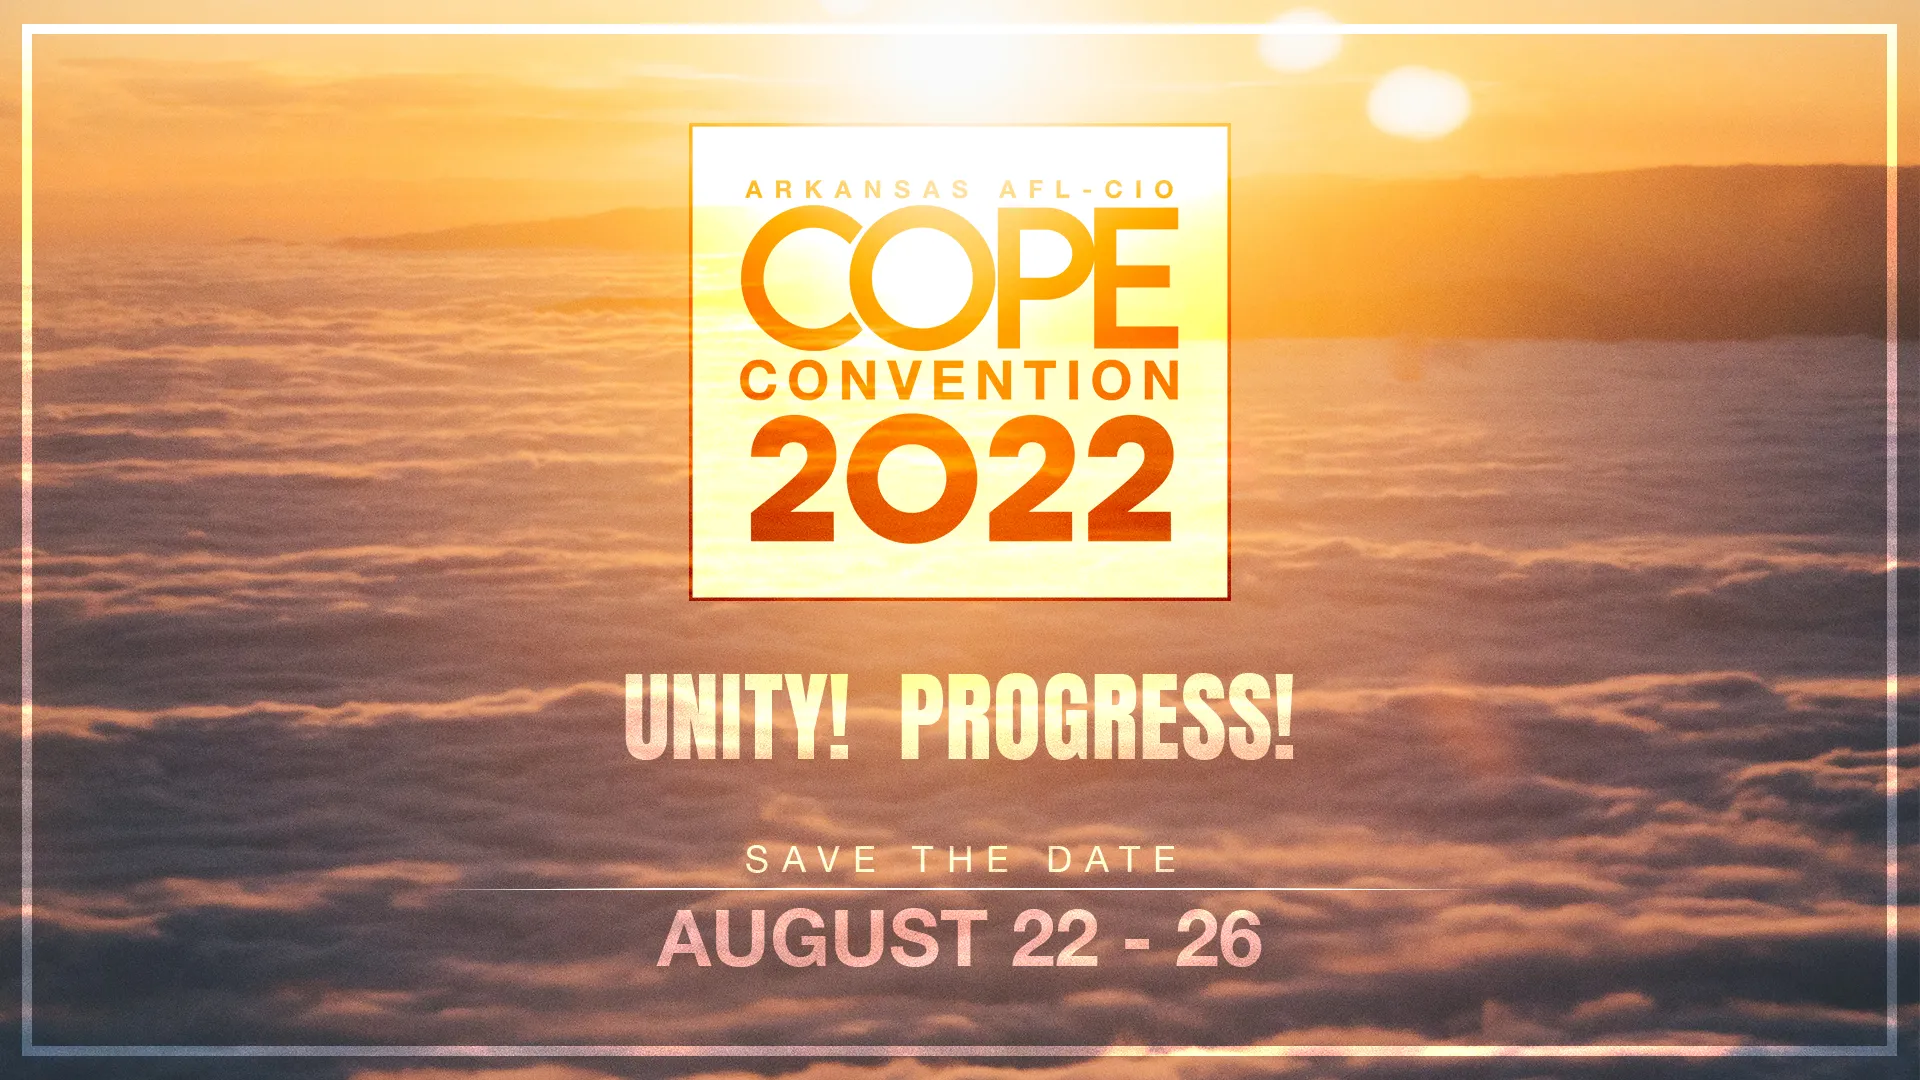 2022 Arkansas AFL-CIO COPE Convention